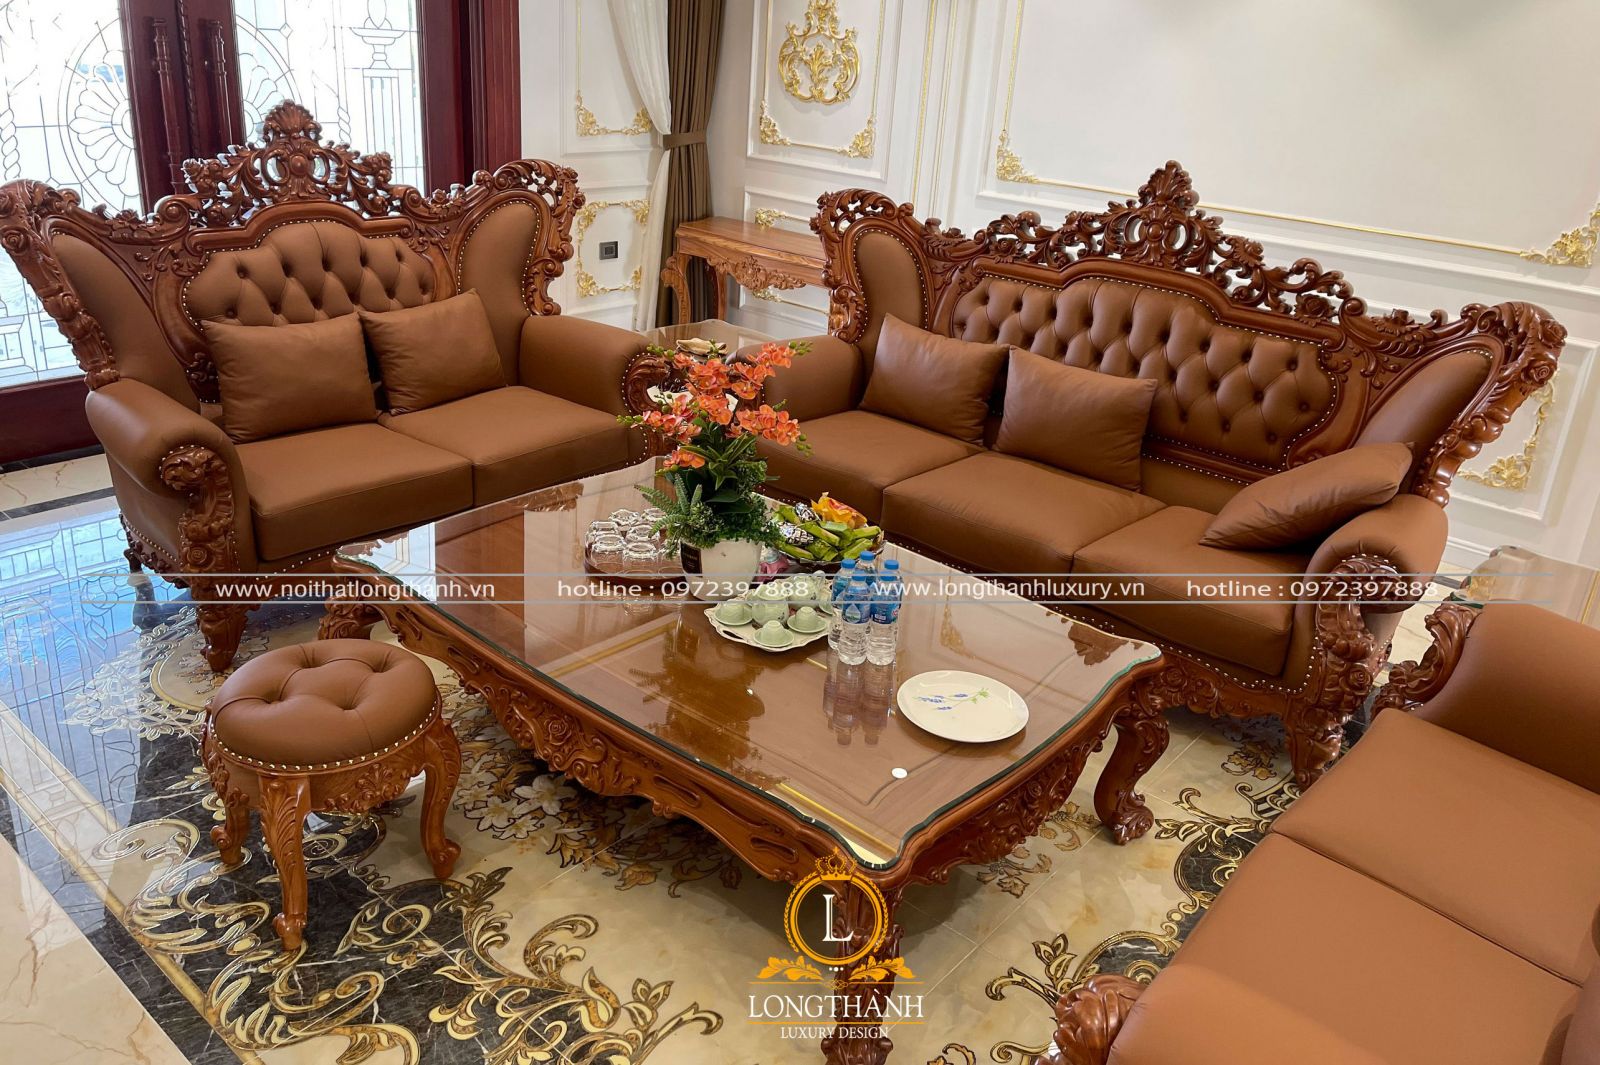 Bàn giao sofa tân cổ điển cho a Điệp - Móng Cái, Quảng Ninh